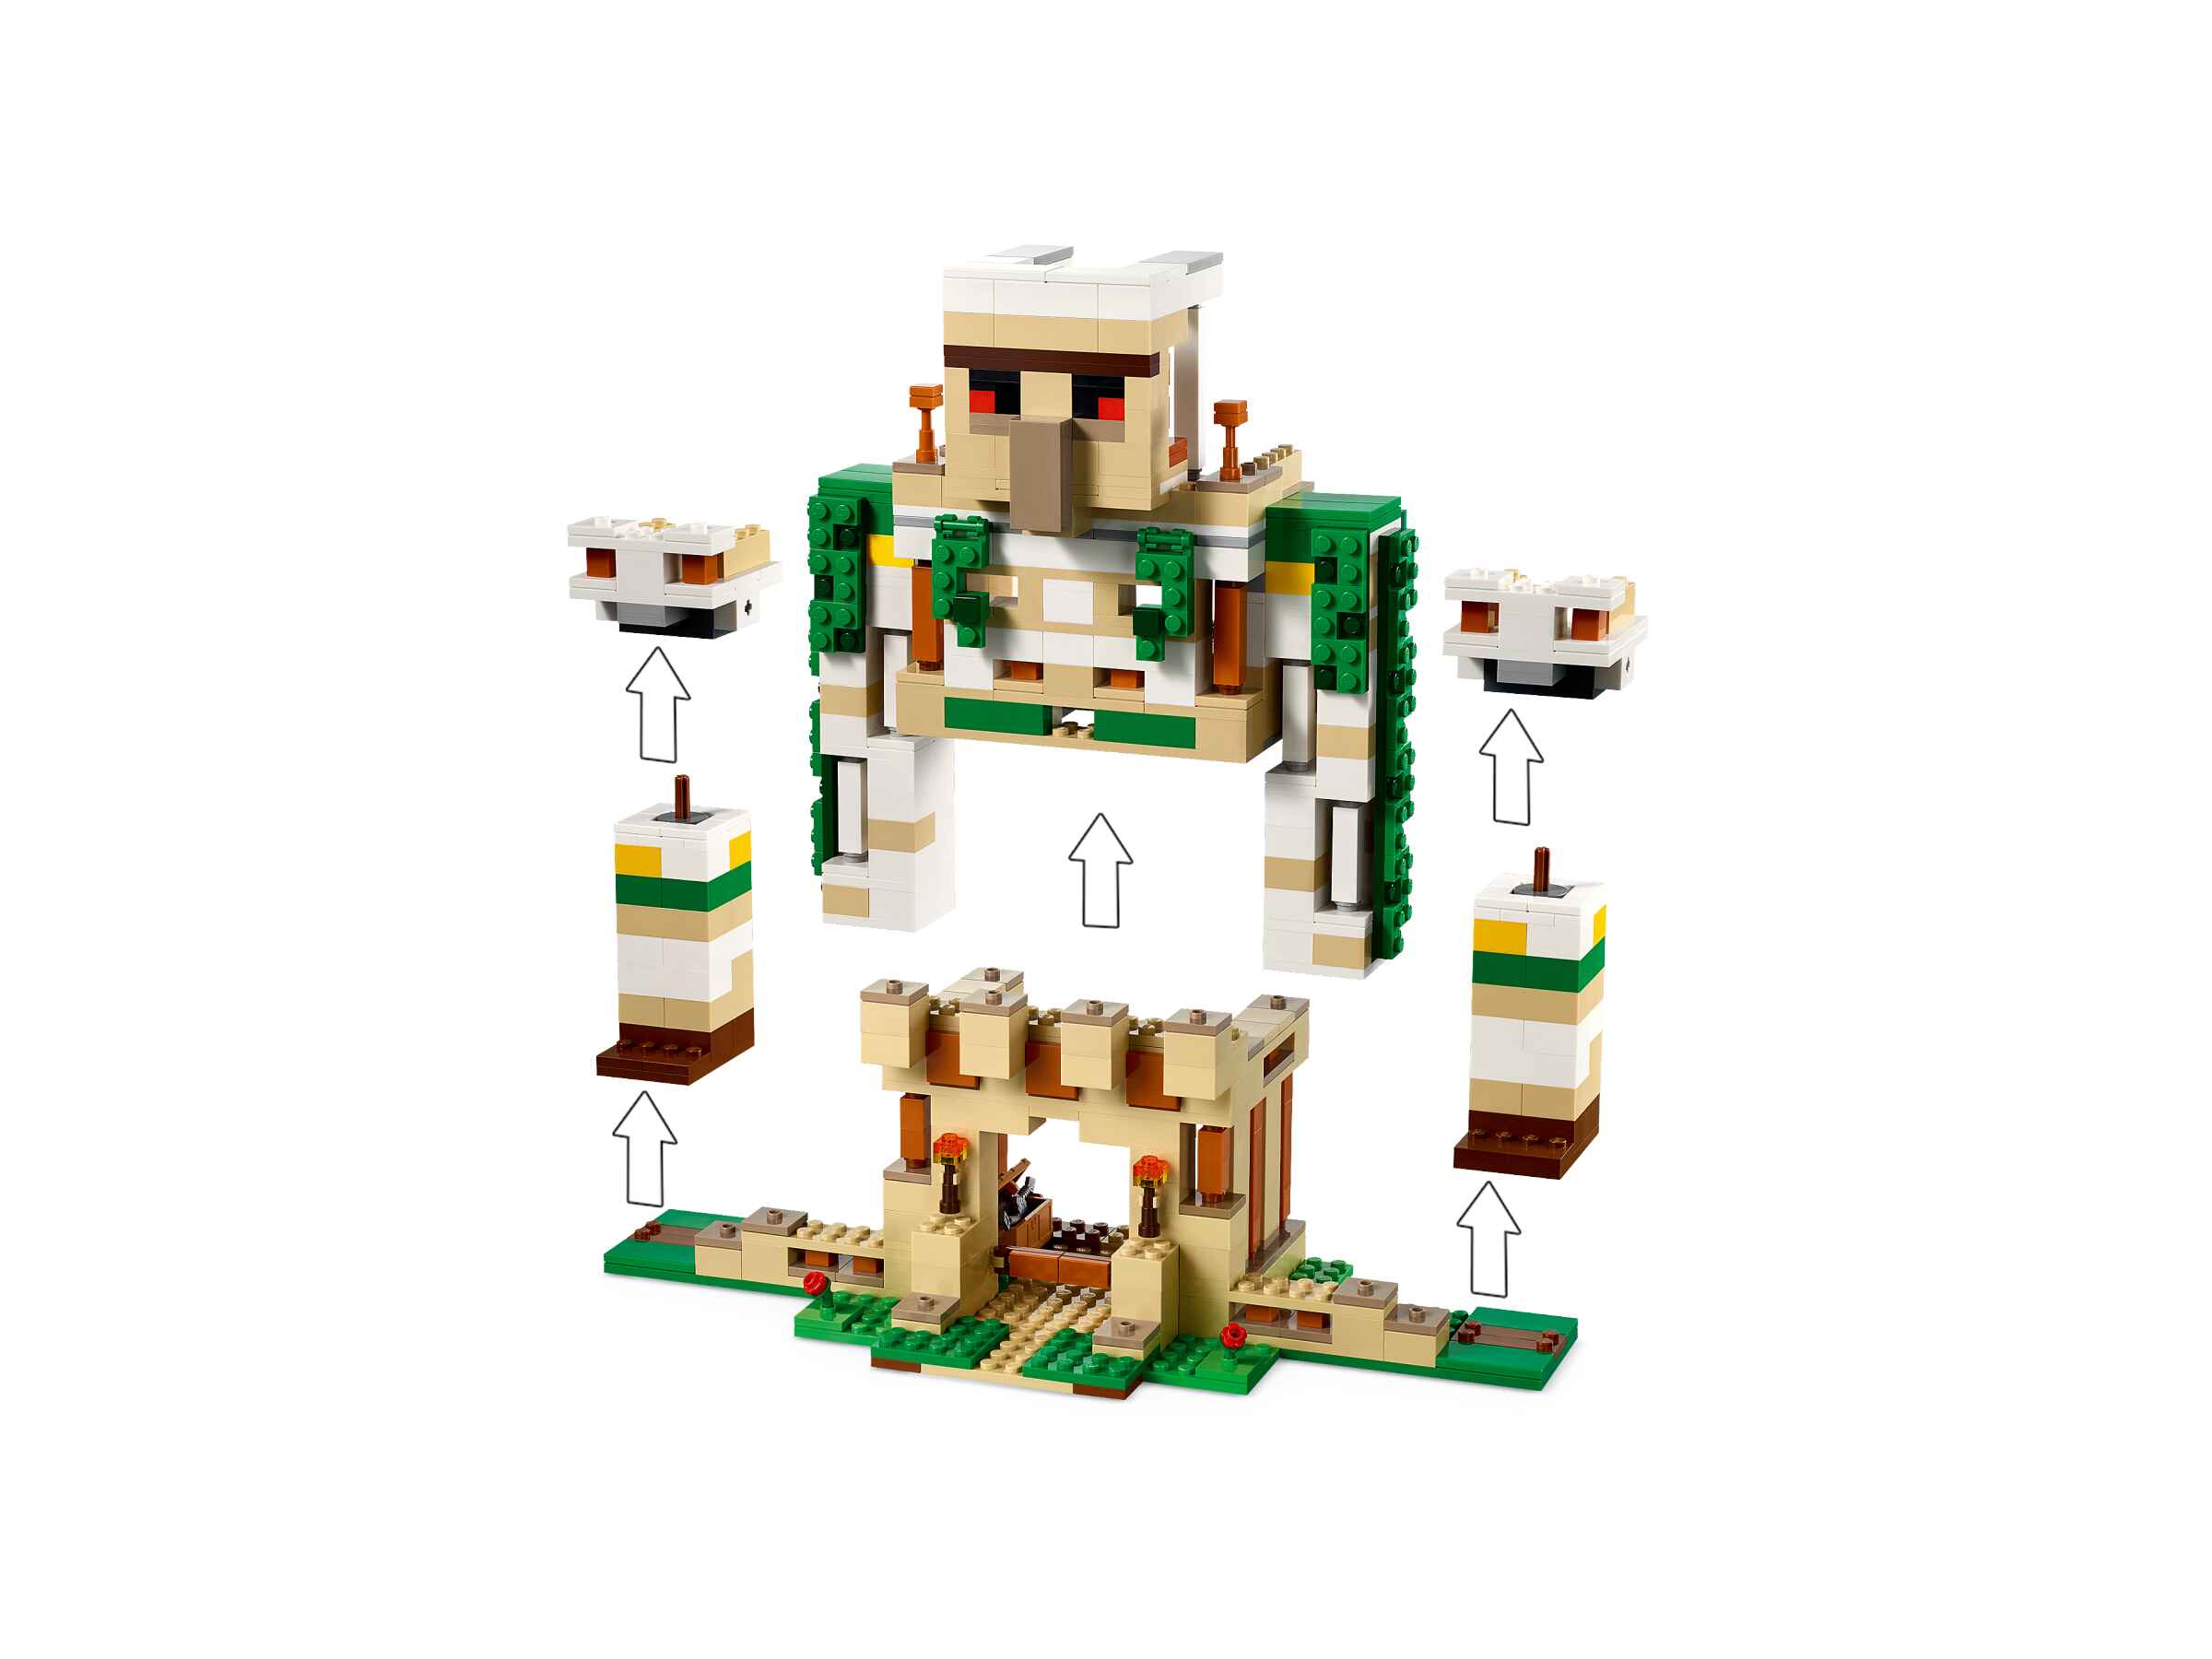 LEGO 21250 Minecraft Die Eisengolem-Festung, 6 Figuren